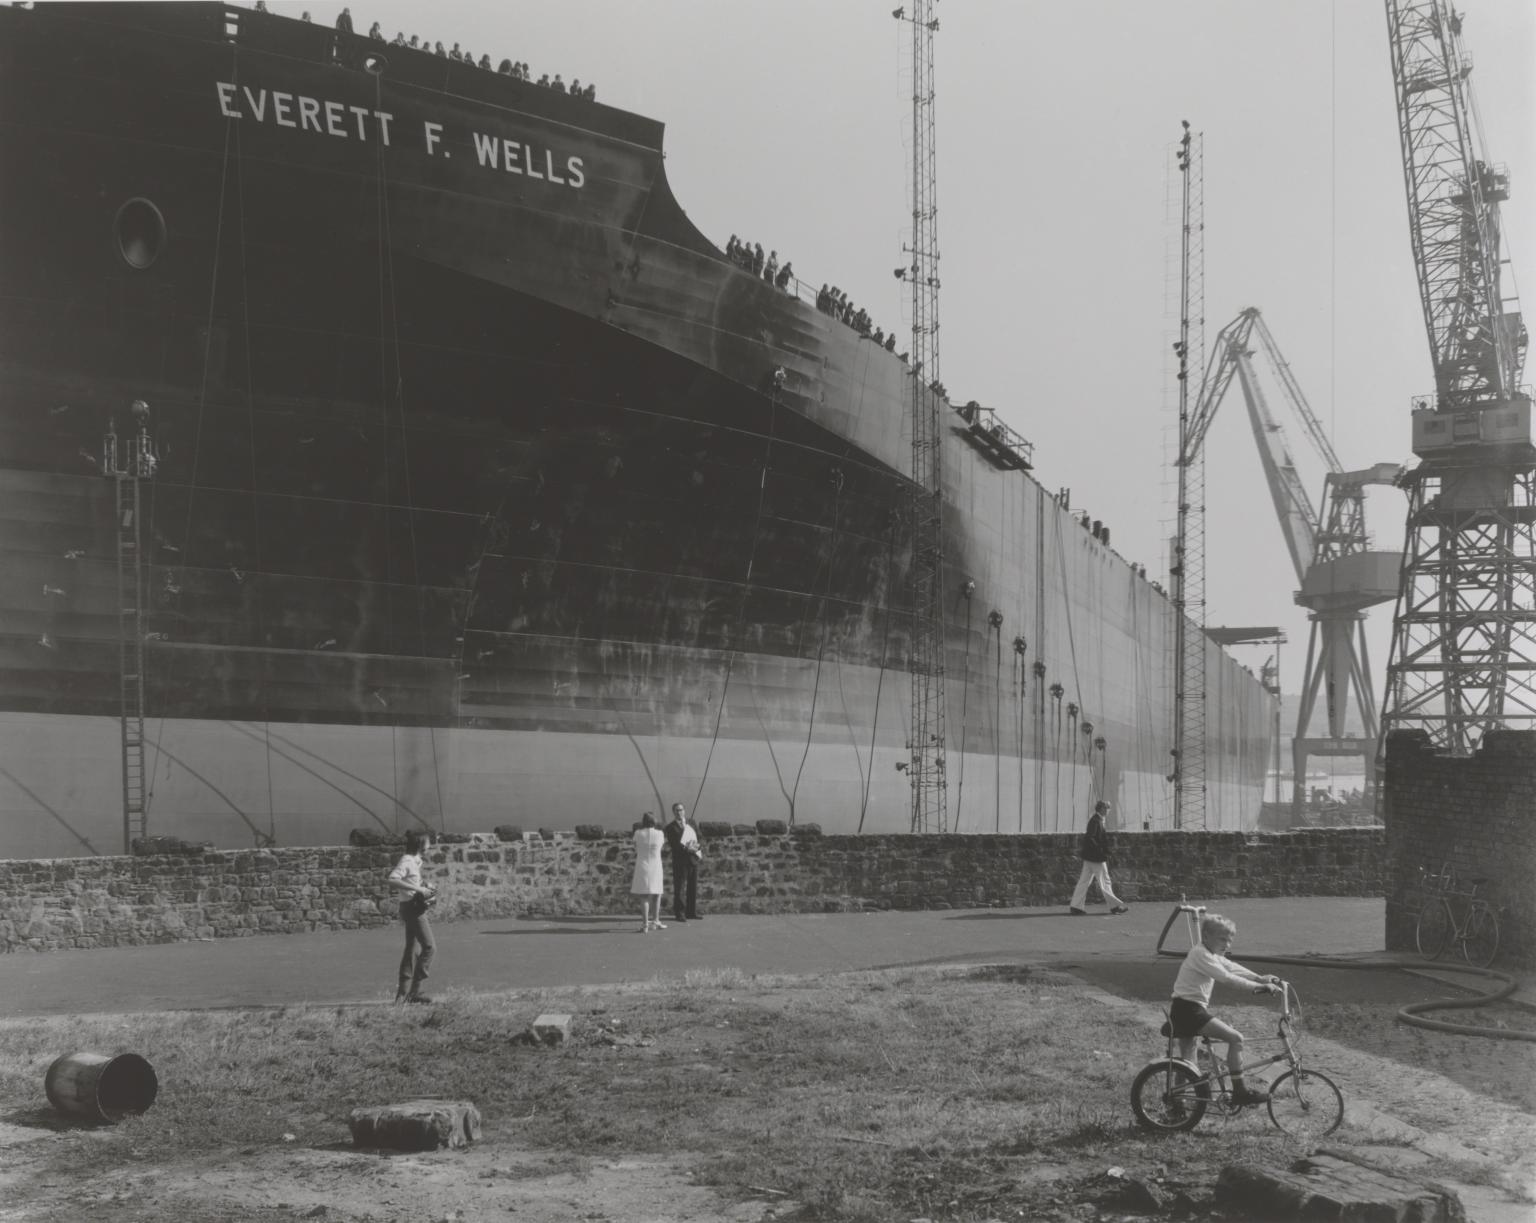 P81035: Launch of the supertanker, Everett F. Wells, Wallsend, Tyneside